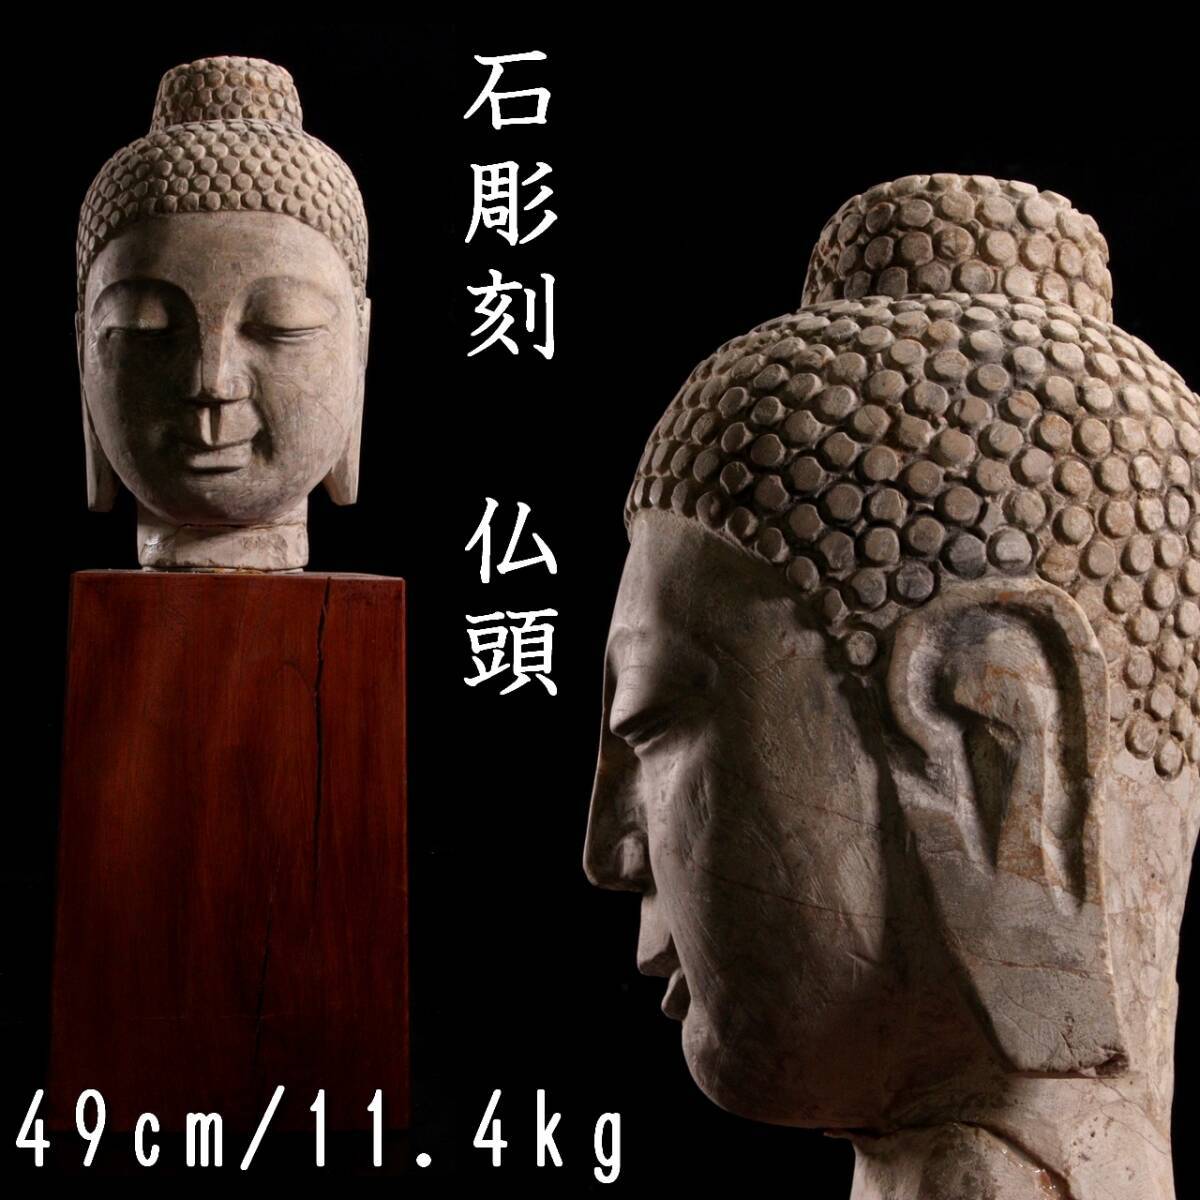 。◆楾◆ 仏教美術 石造 如来仏頭 49cm 11.4kg 台付 ガンダーラ 中国美術 唐物骨董 [R184]QP/24.2廻/OD/(140)